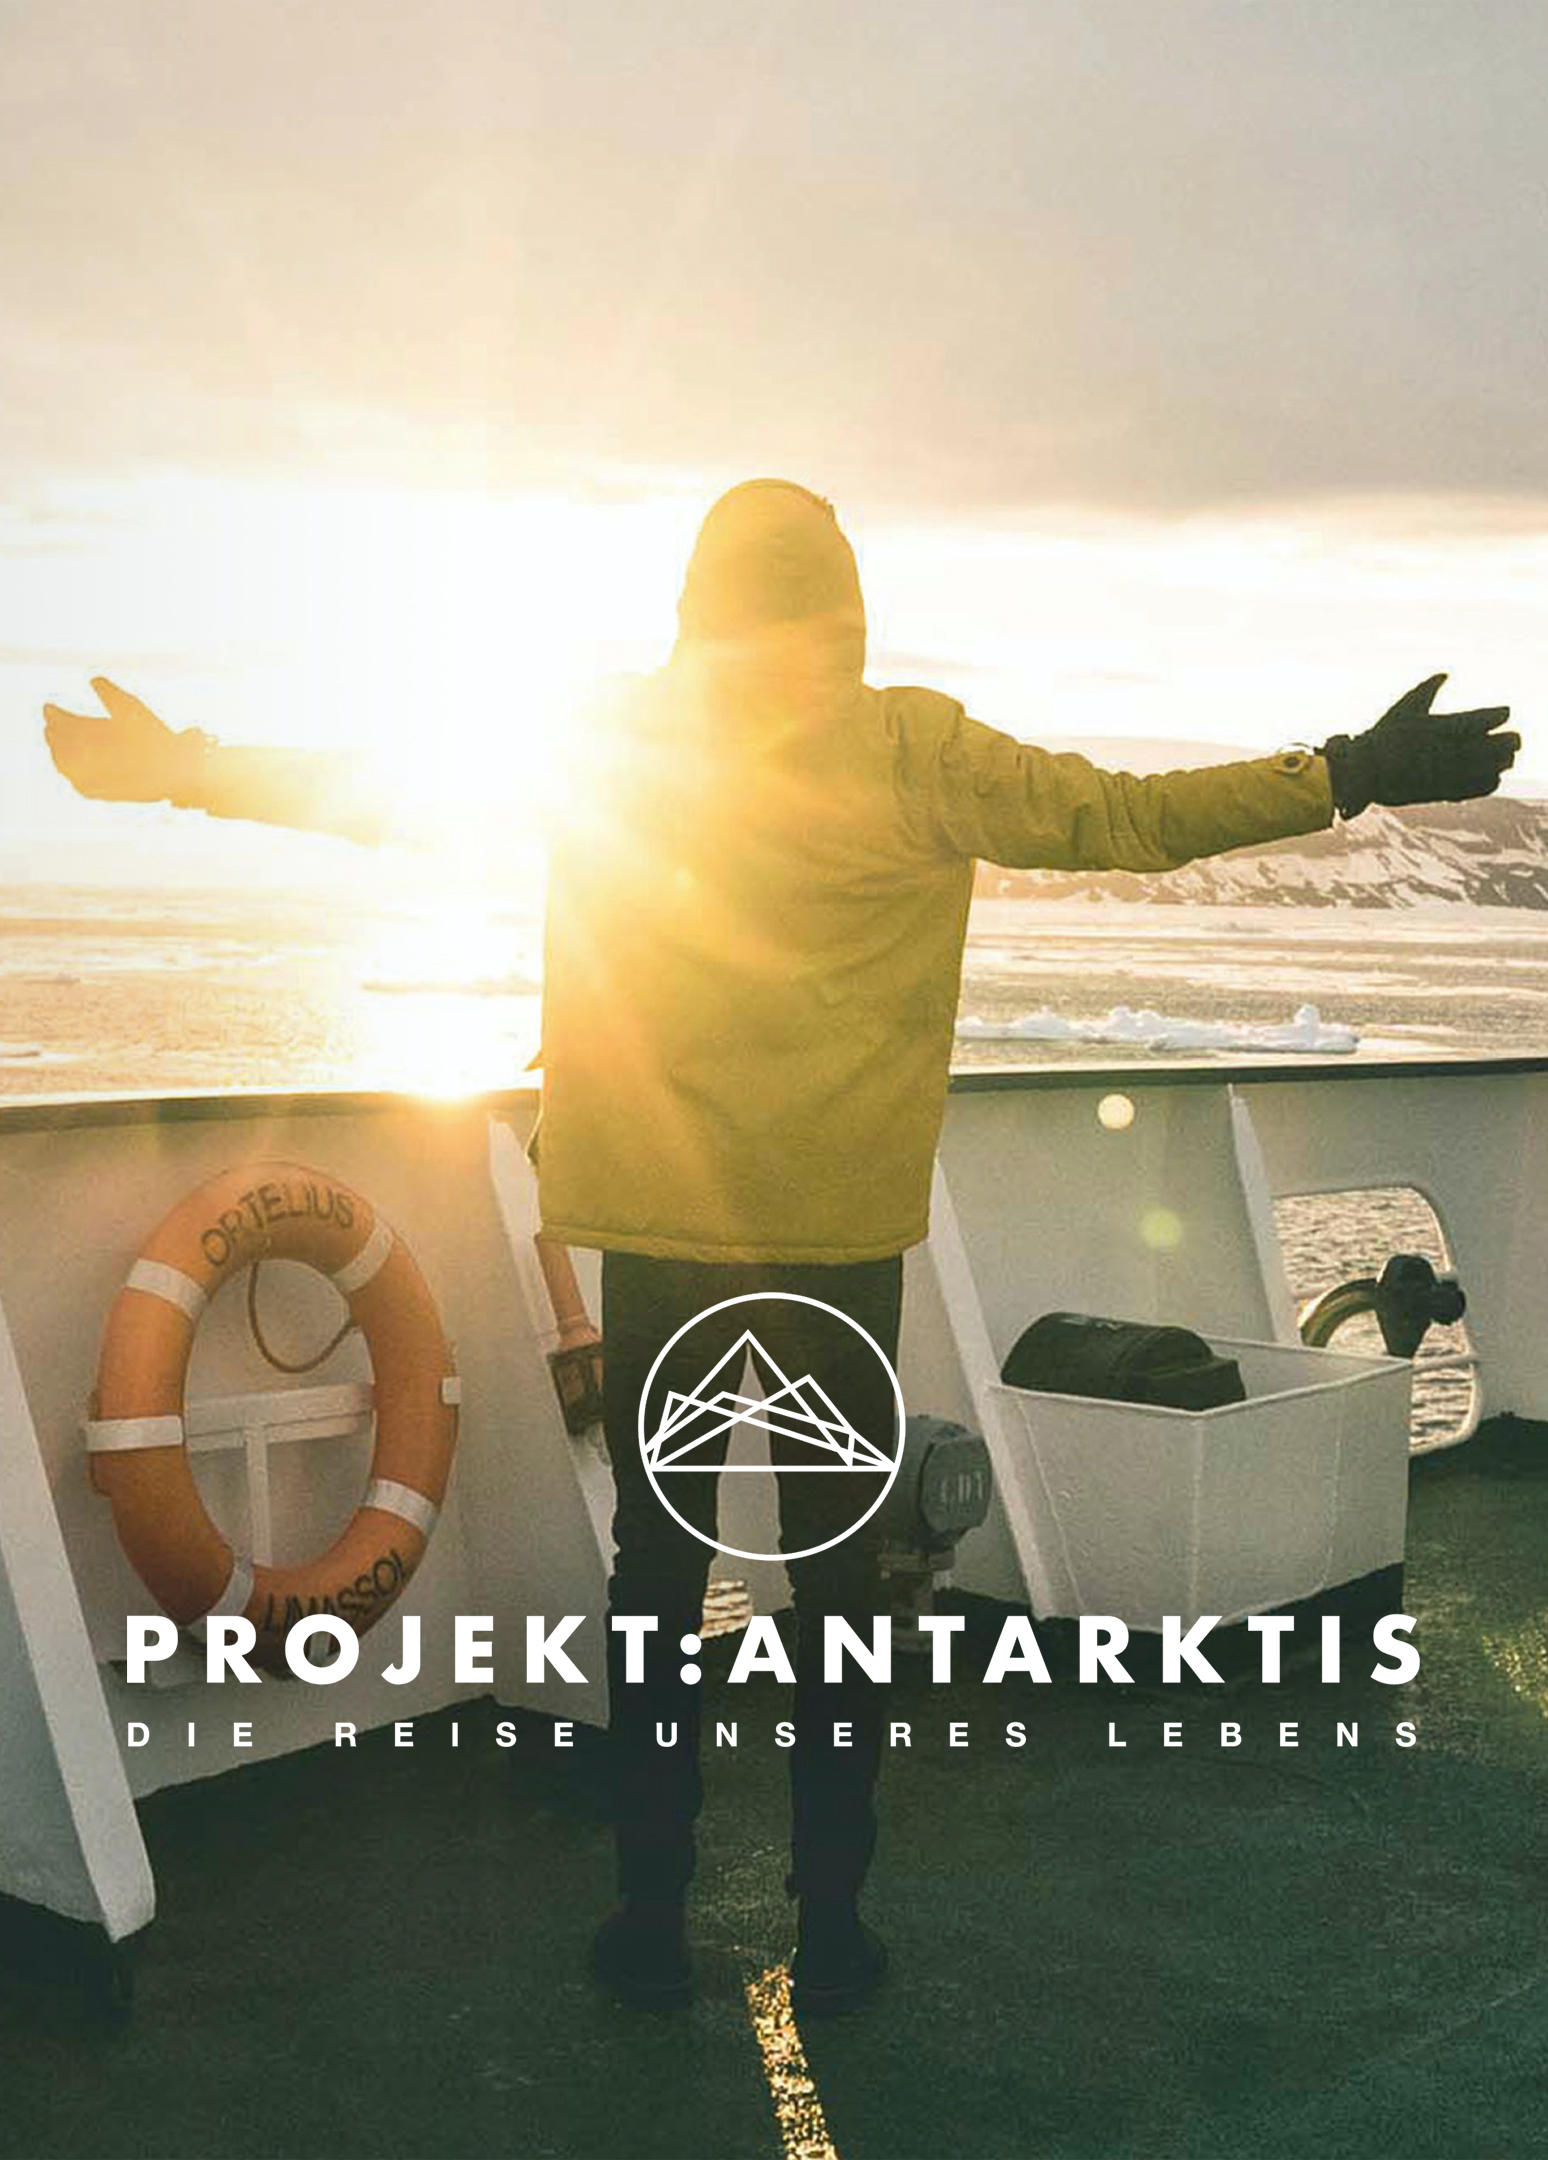 Projekt: Antarktis - Die Reise unseres Lebens